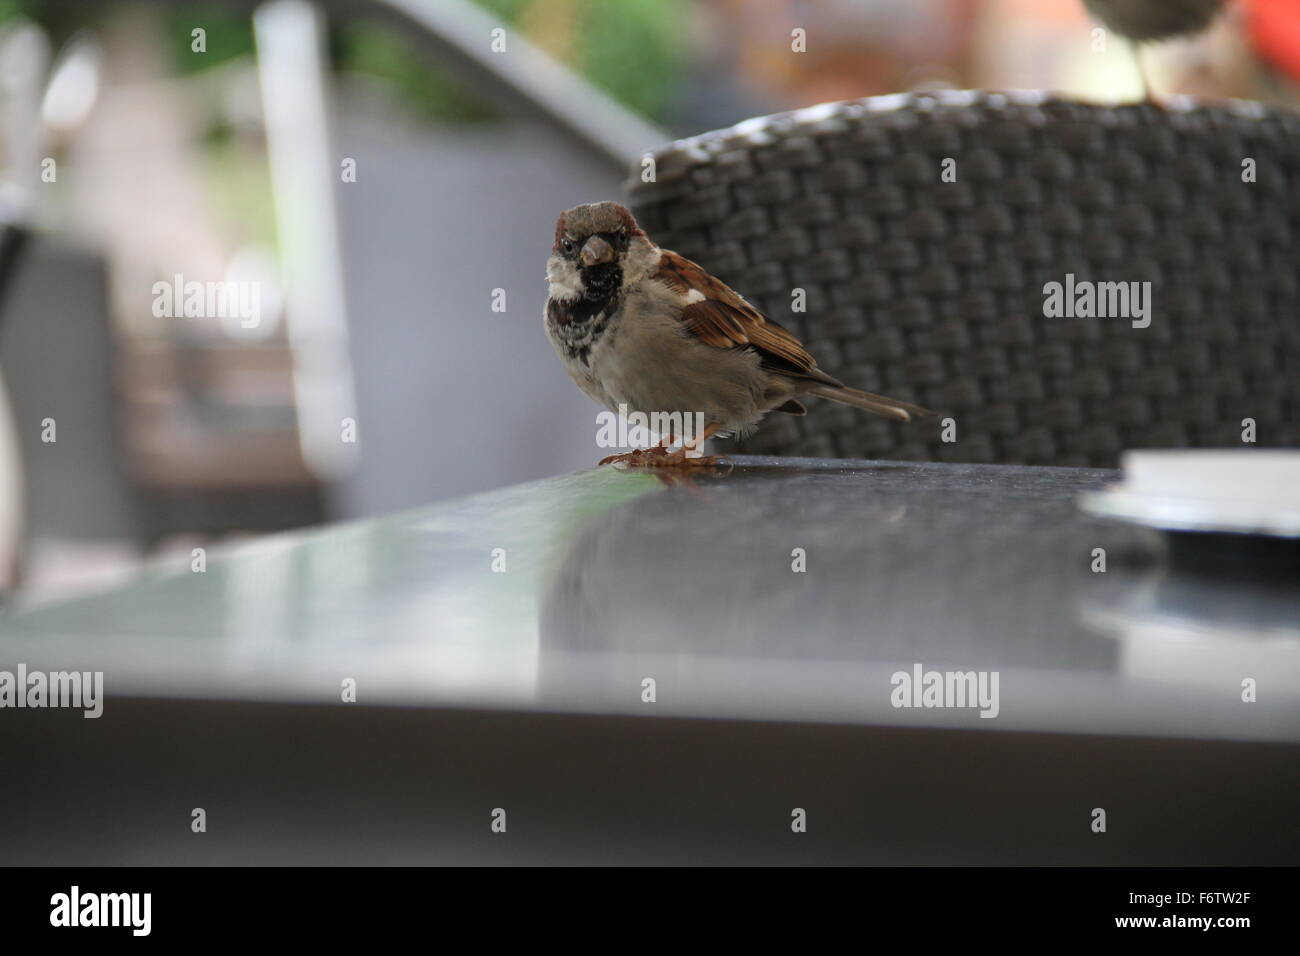 Sparrow on a table Stock Photo